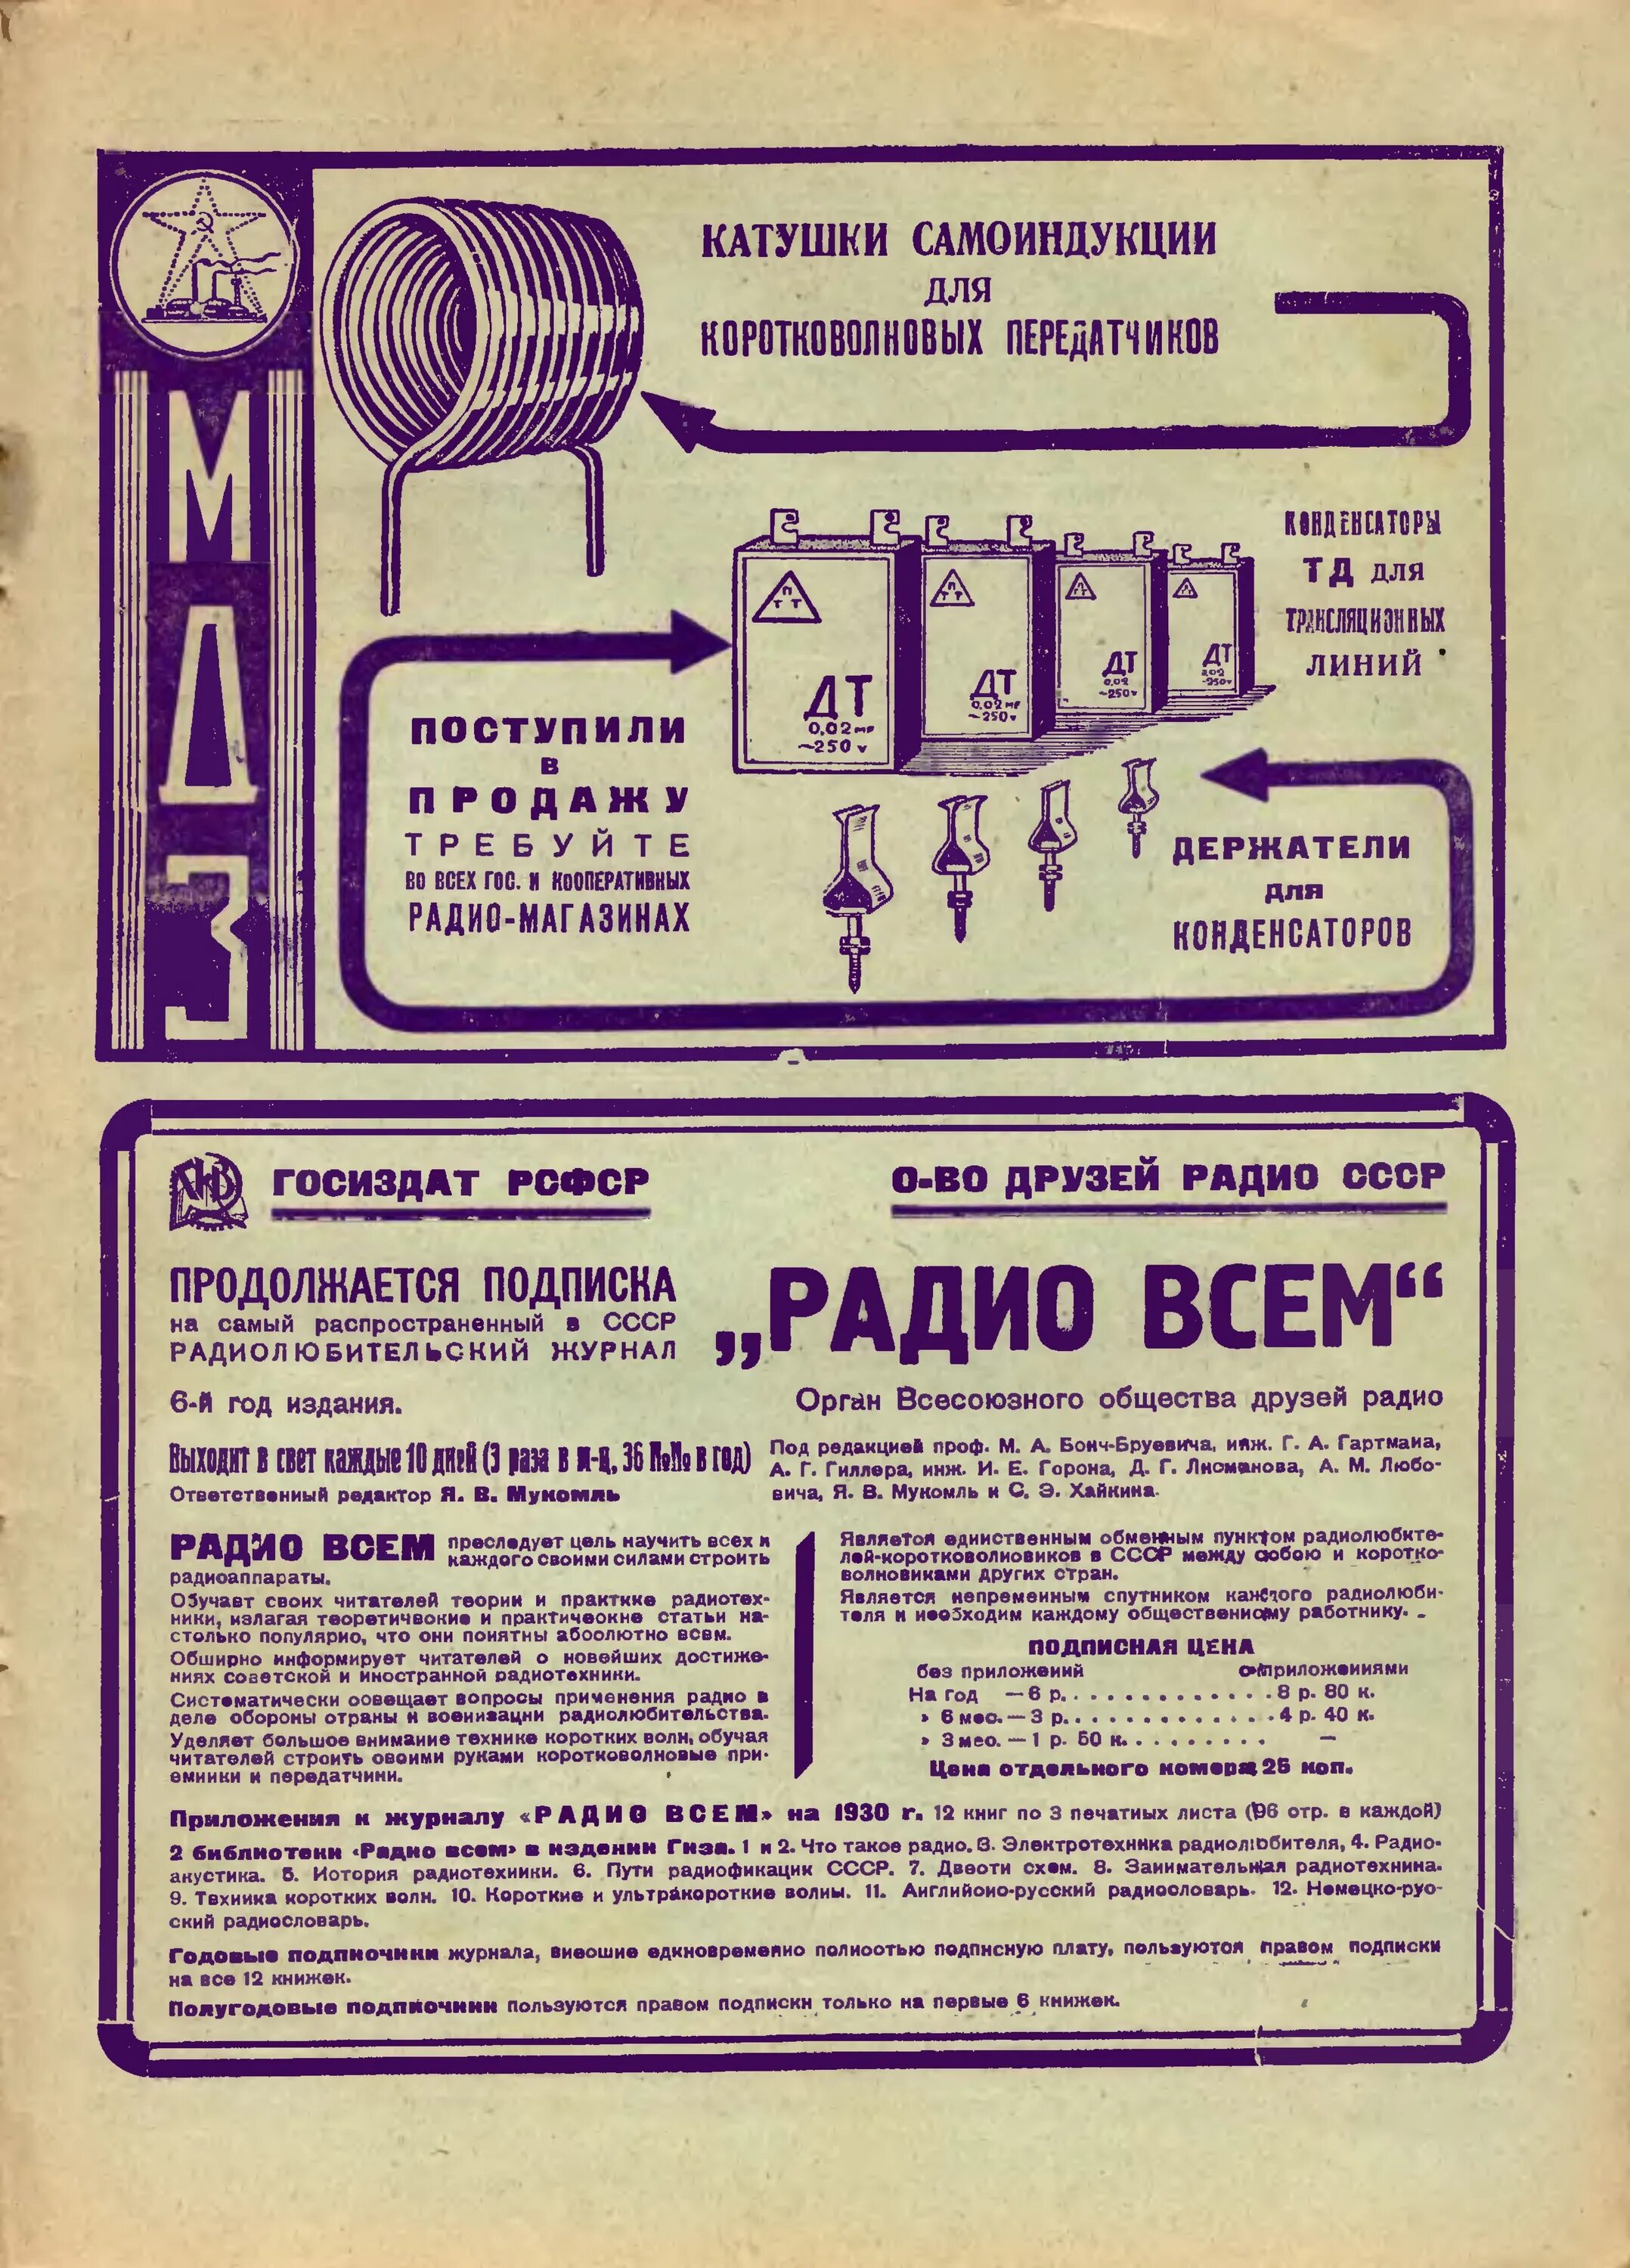 Журнал радио всем. Радио 1930 годов. Обложки журнала радио. Первое радио 1930 года.